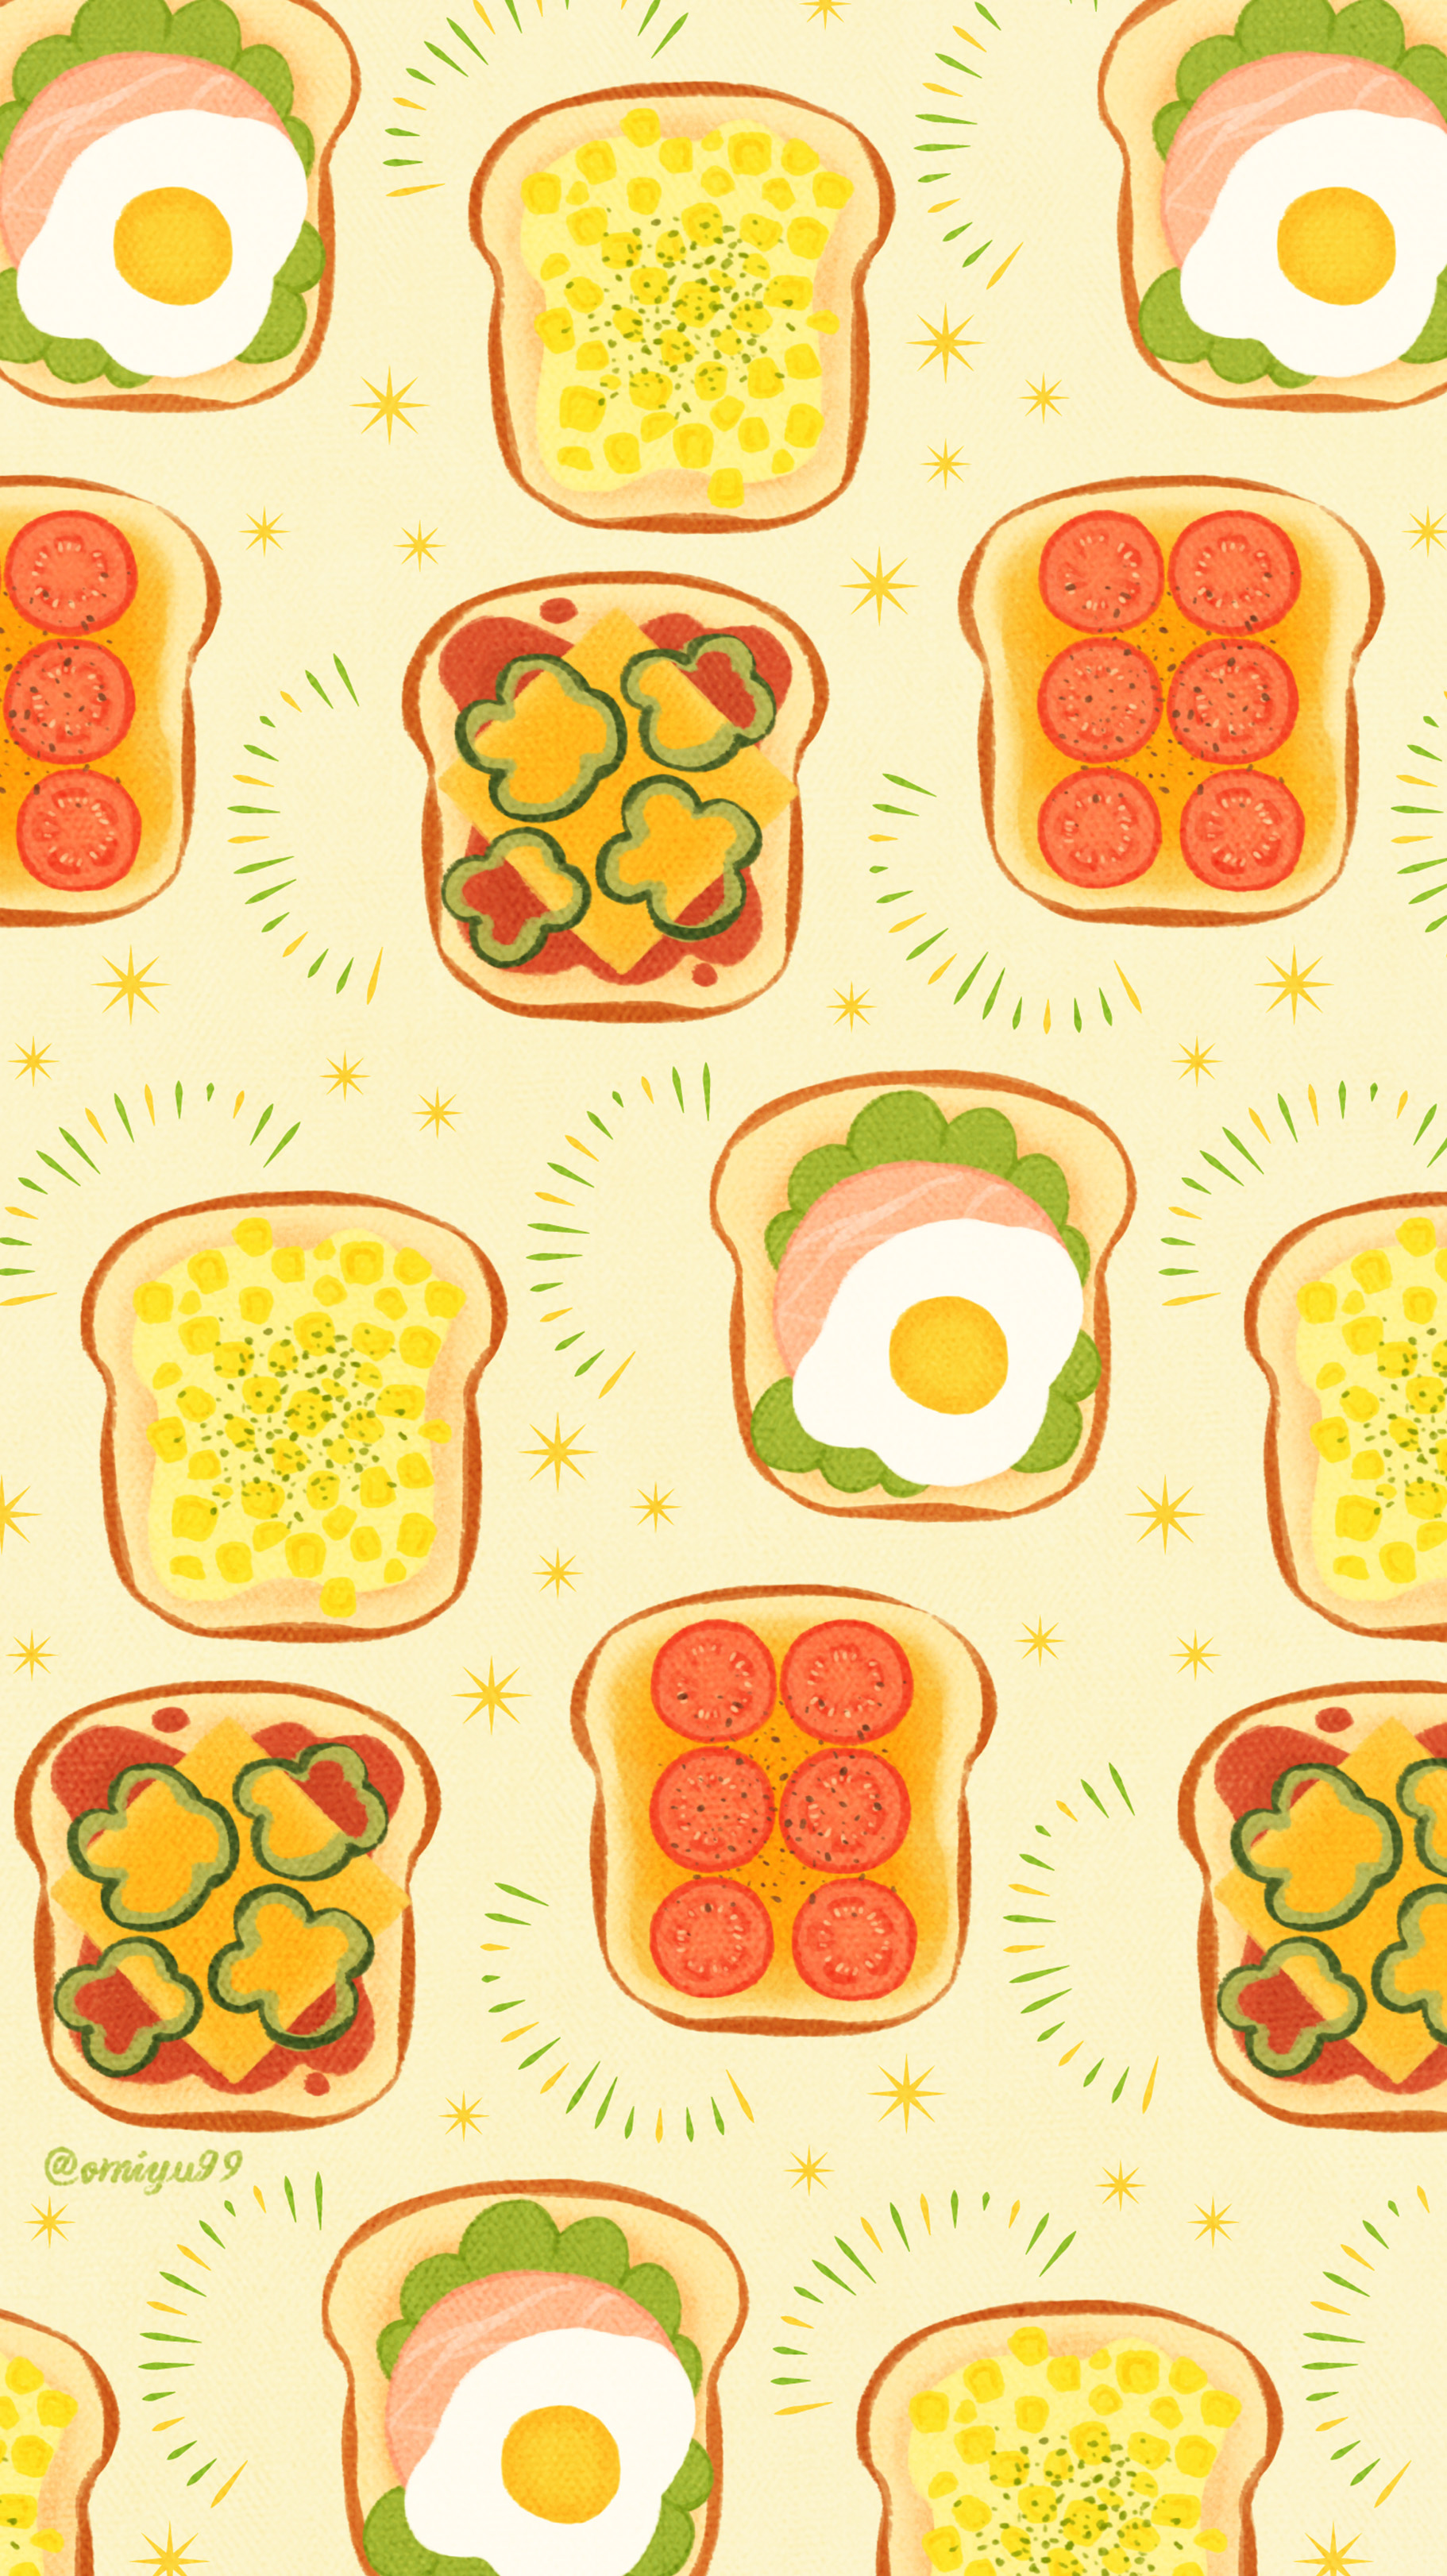 Omiyu おやさいトーストな壁紙 Illust Illustration トースト Toast イラスト Iphone壁紙 壁紙 食べ物 T Co Uljeavna5n Twitter